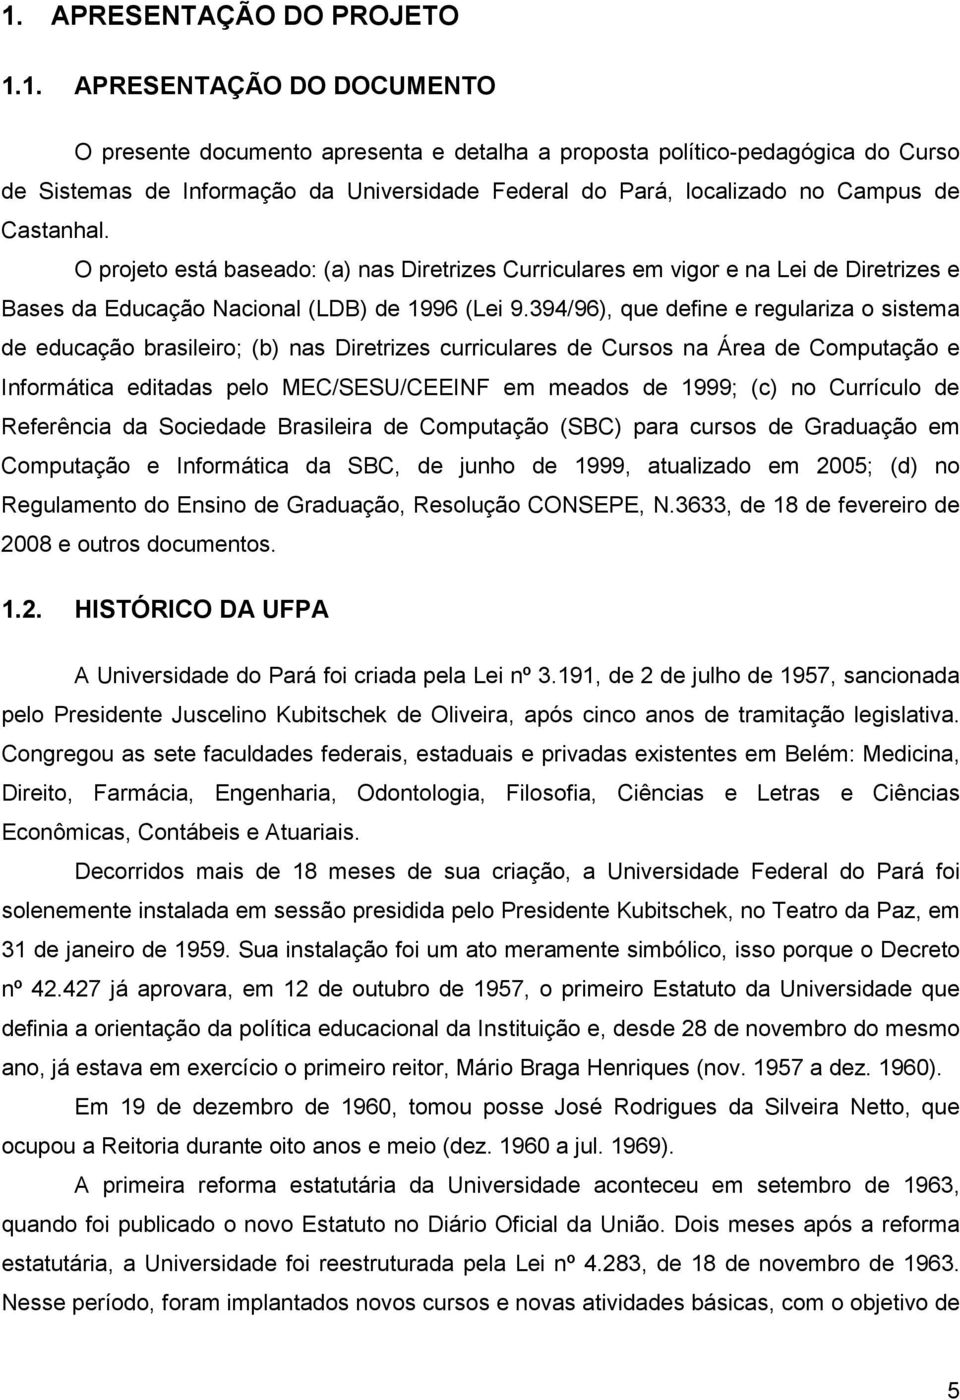 394/96), que define e regulariza o sistema de educação brasileiro; (b) nas Diretrizes curriculares de Cursos na Área de Computação e Informática editadas pelo MEC/SESU/CEEINF em meados de 1999; (c)